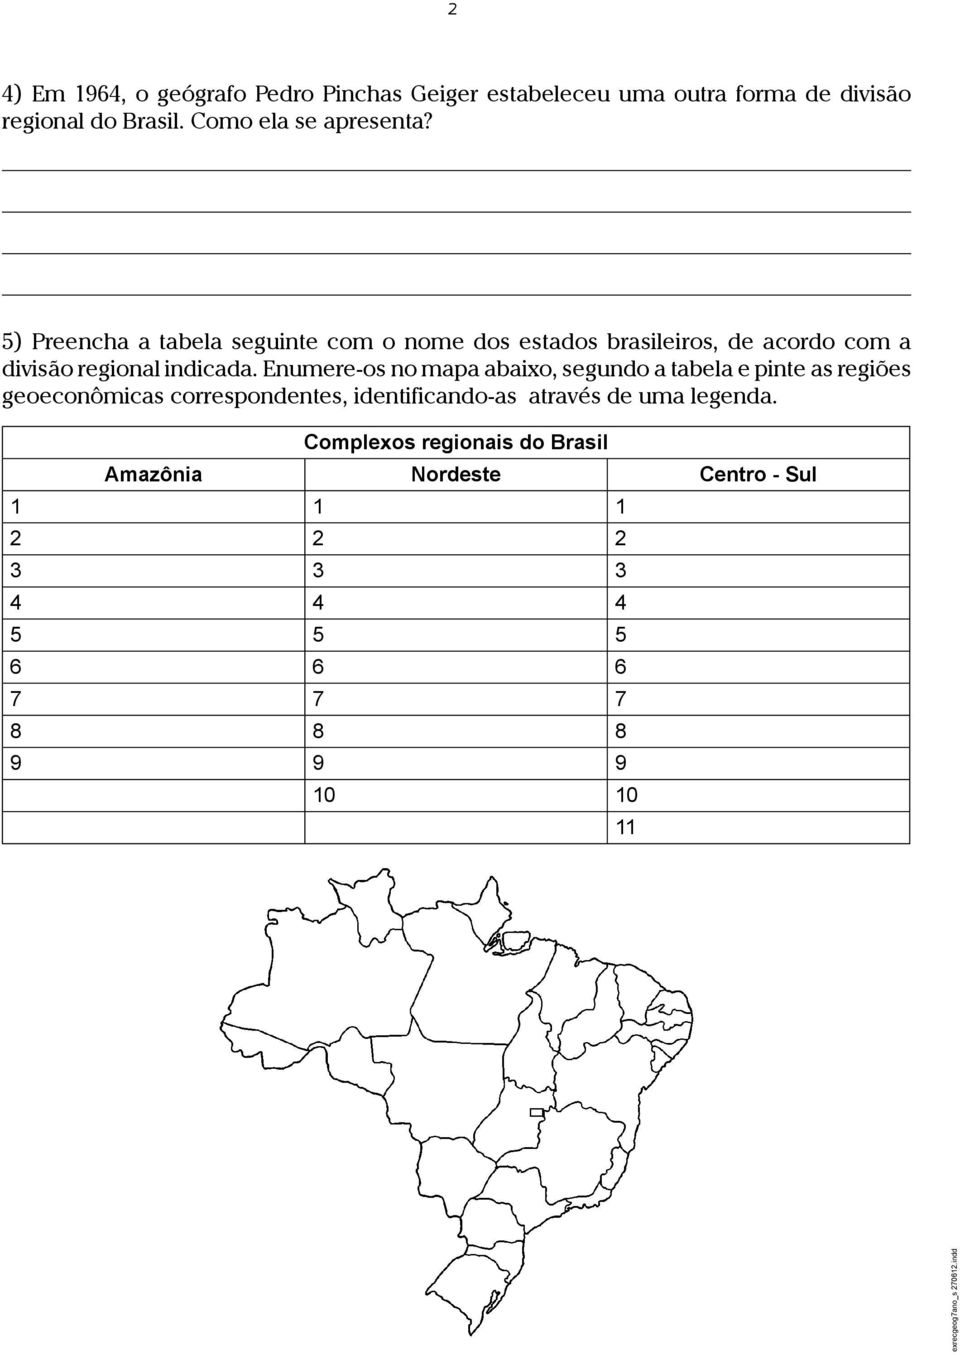 5) Preencha a tabela seguinte com o nome dos estados brasileiros, de acordo com a divisão regional indicada.